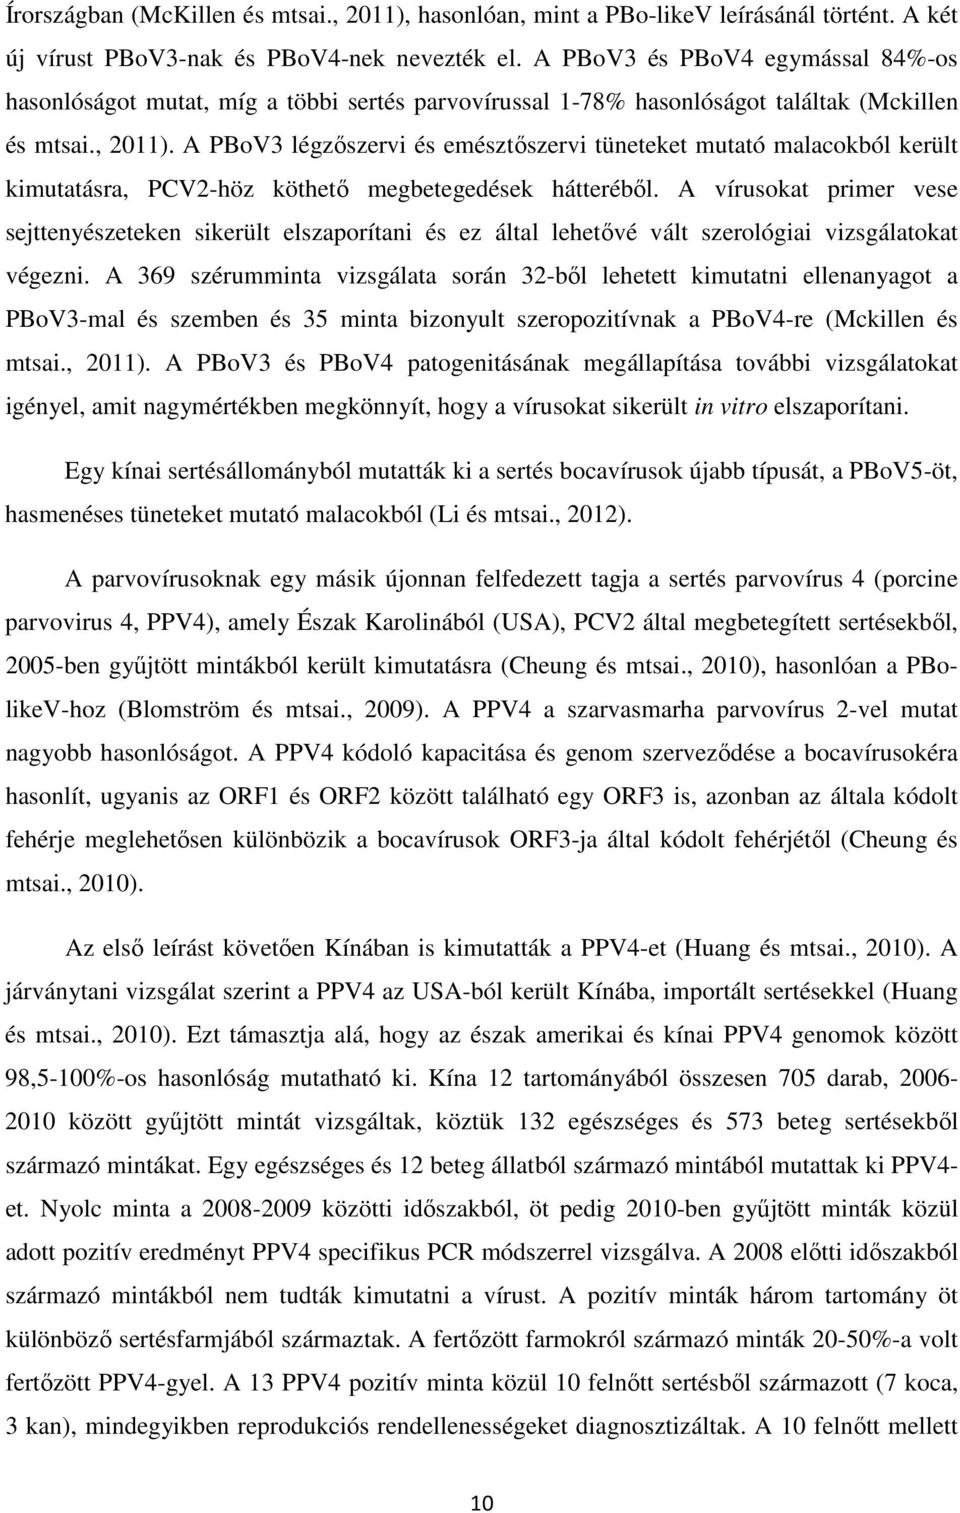 A PBoV3 légzőszervi és emésztőszervi tüneteket mutató malacokból került kimutatásra, PCV2-höz köthető megbetegedések hátteréből.